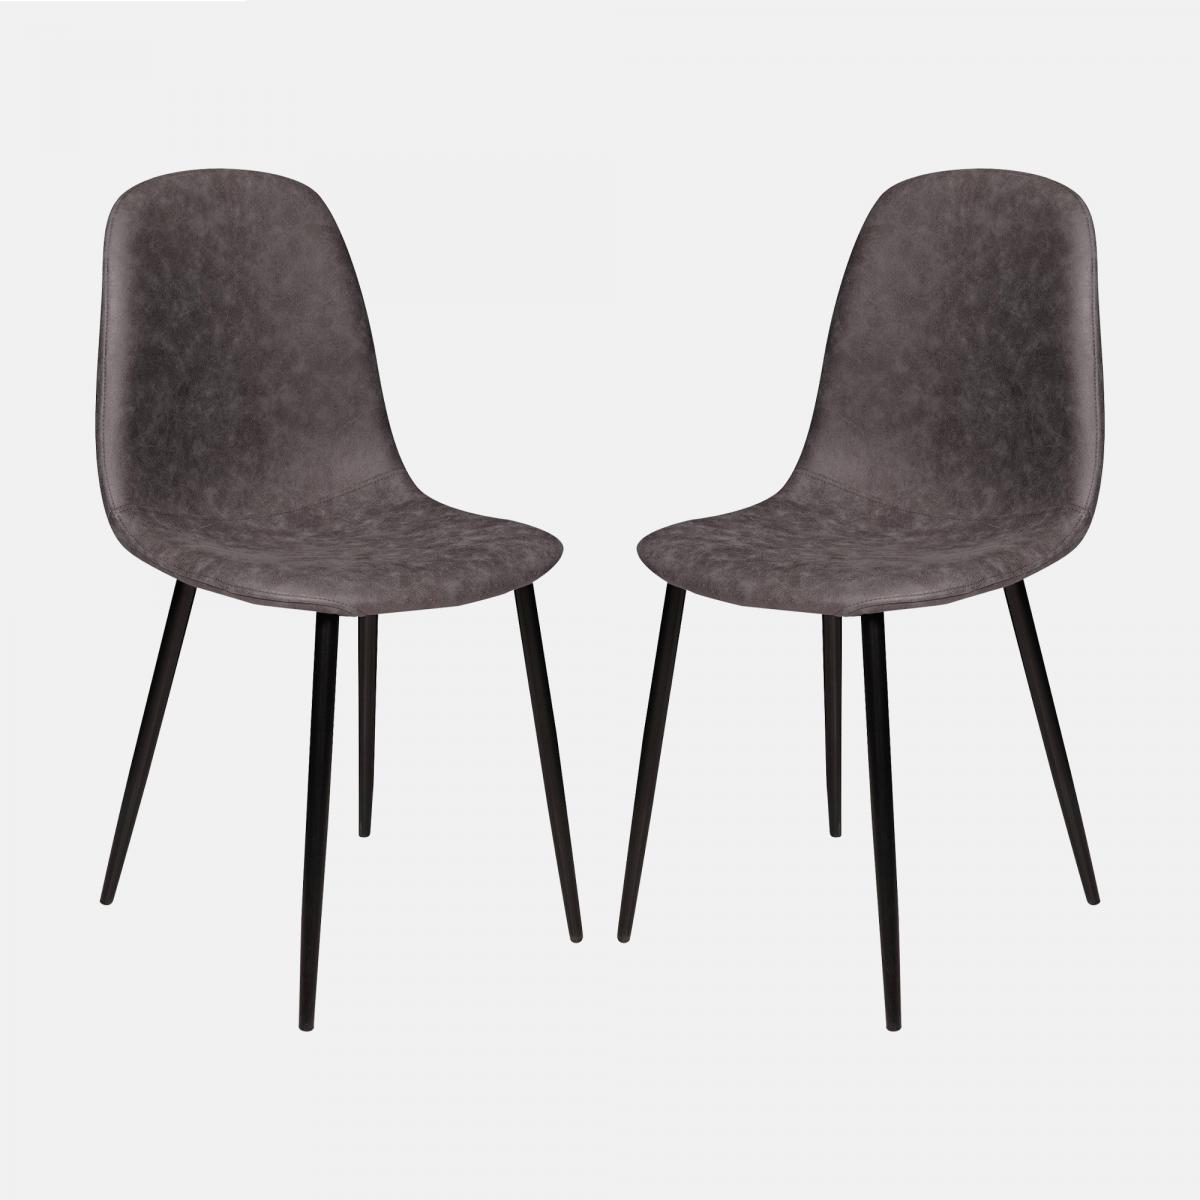 ensemble de 2 chaises modernes en éco-cuir, pour salle à manger, cuisine ou salon, cm 56x45h87, couleur gris